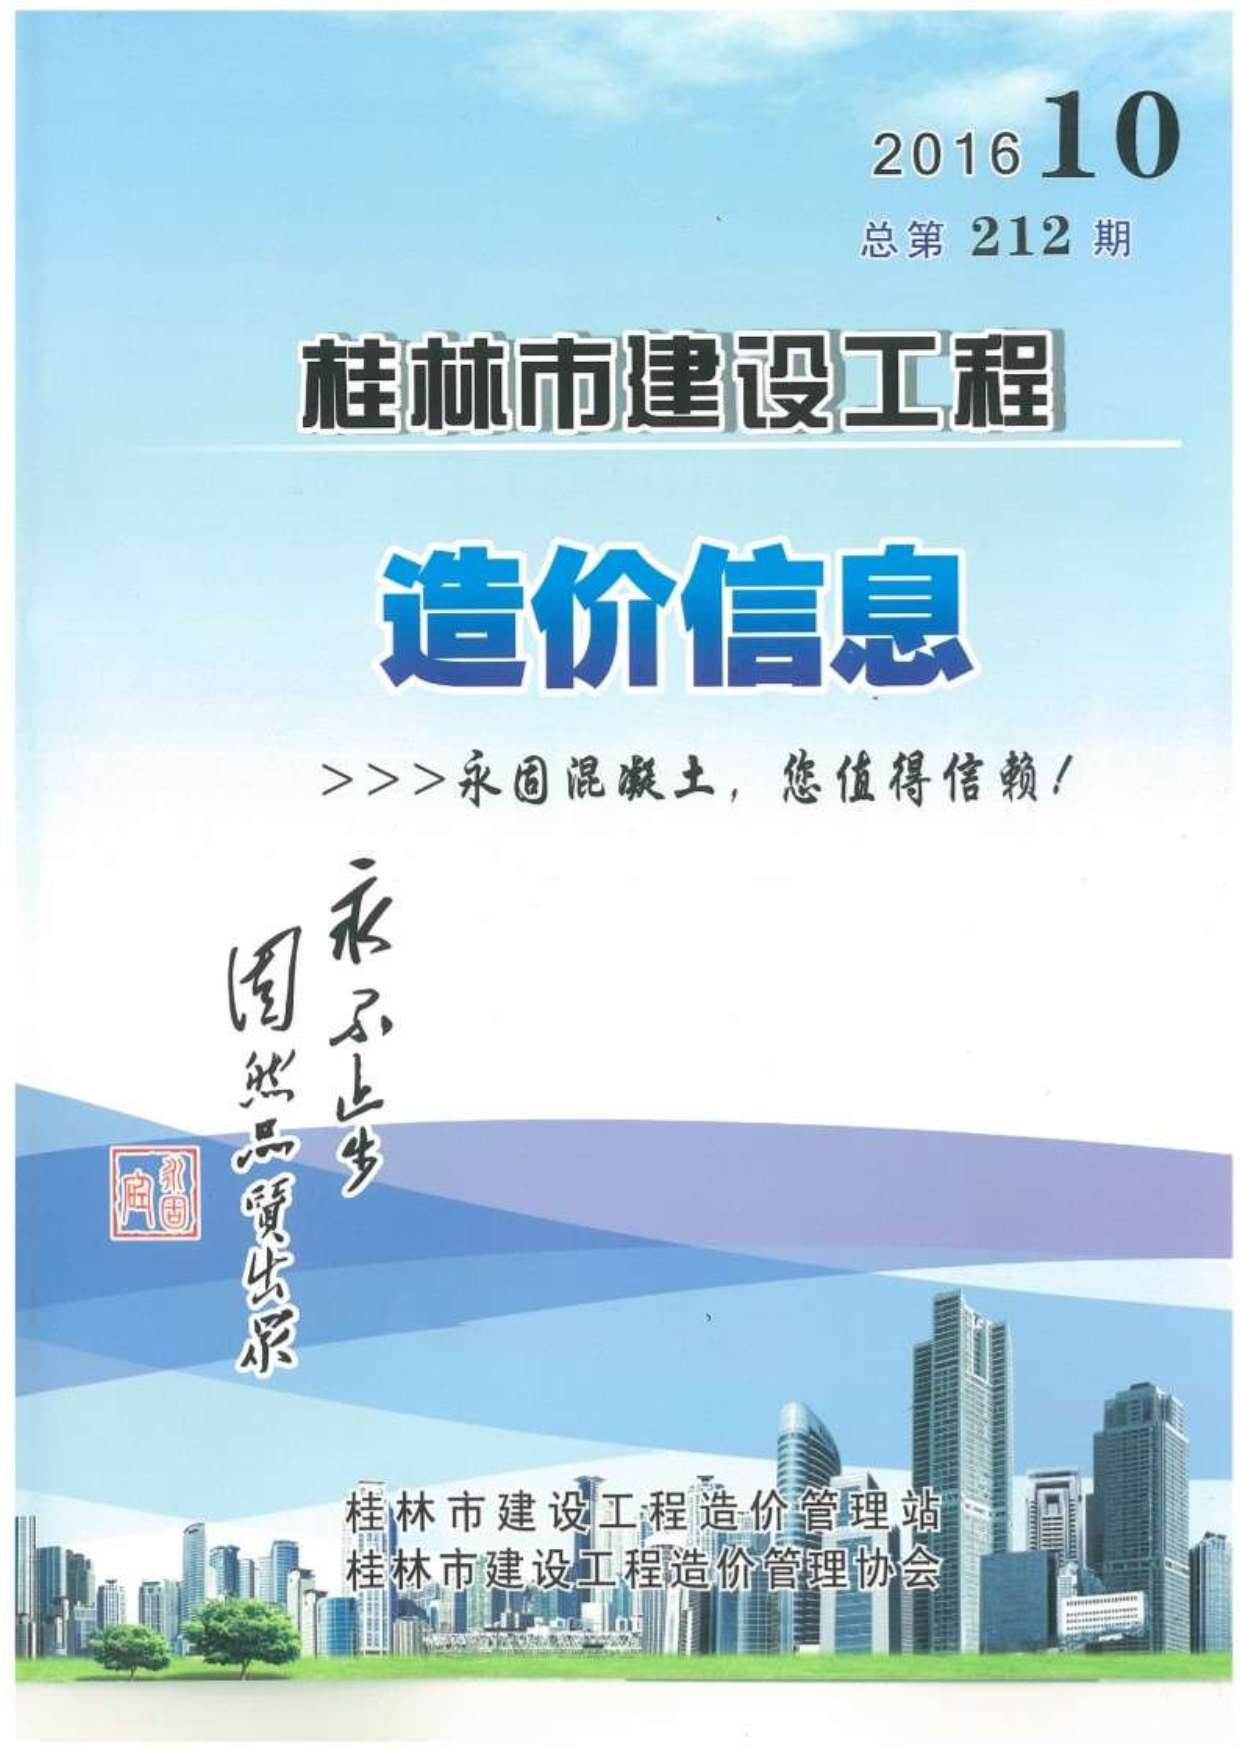 桂林市2016年10月建设工程造价信息